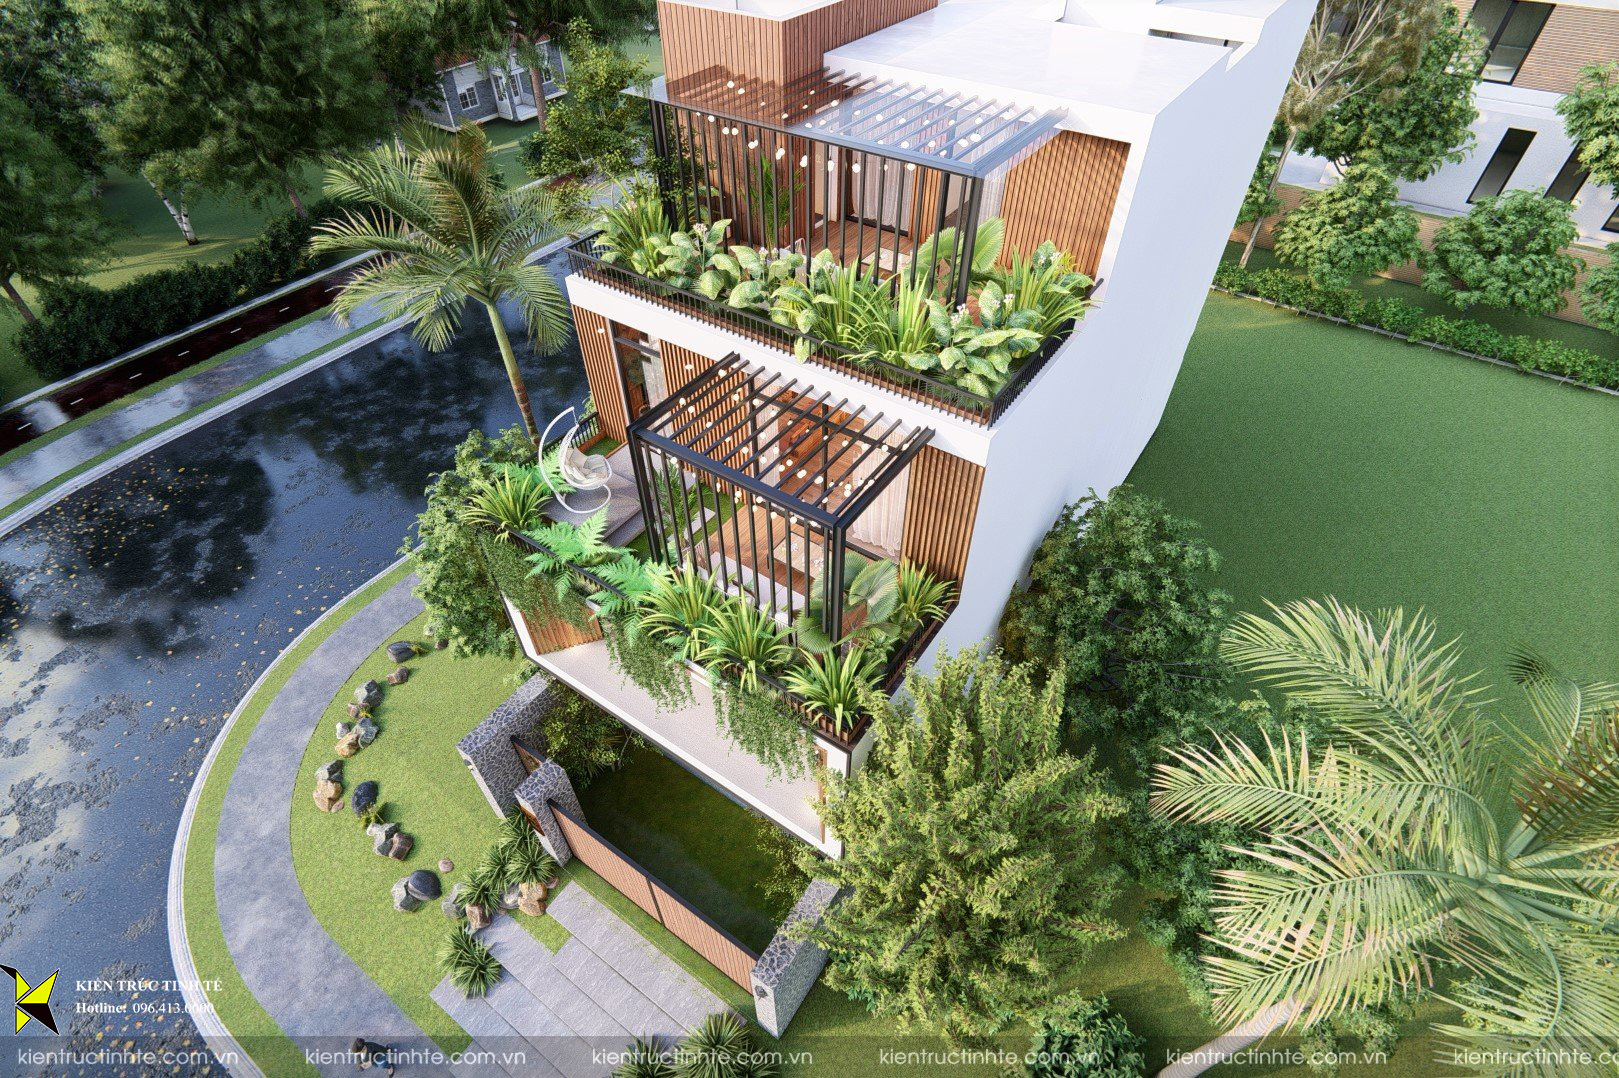 IVY House - Mang không gian xanh vào ngôi nhà của hai vợ chồng trẻ